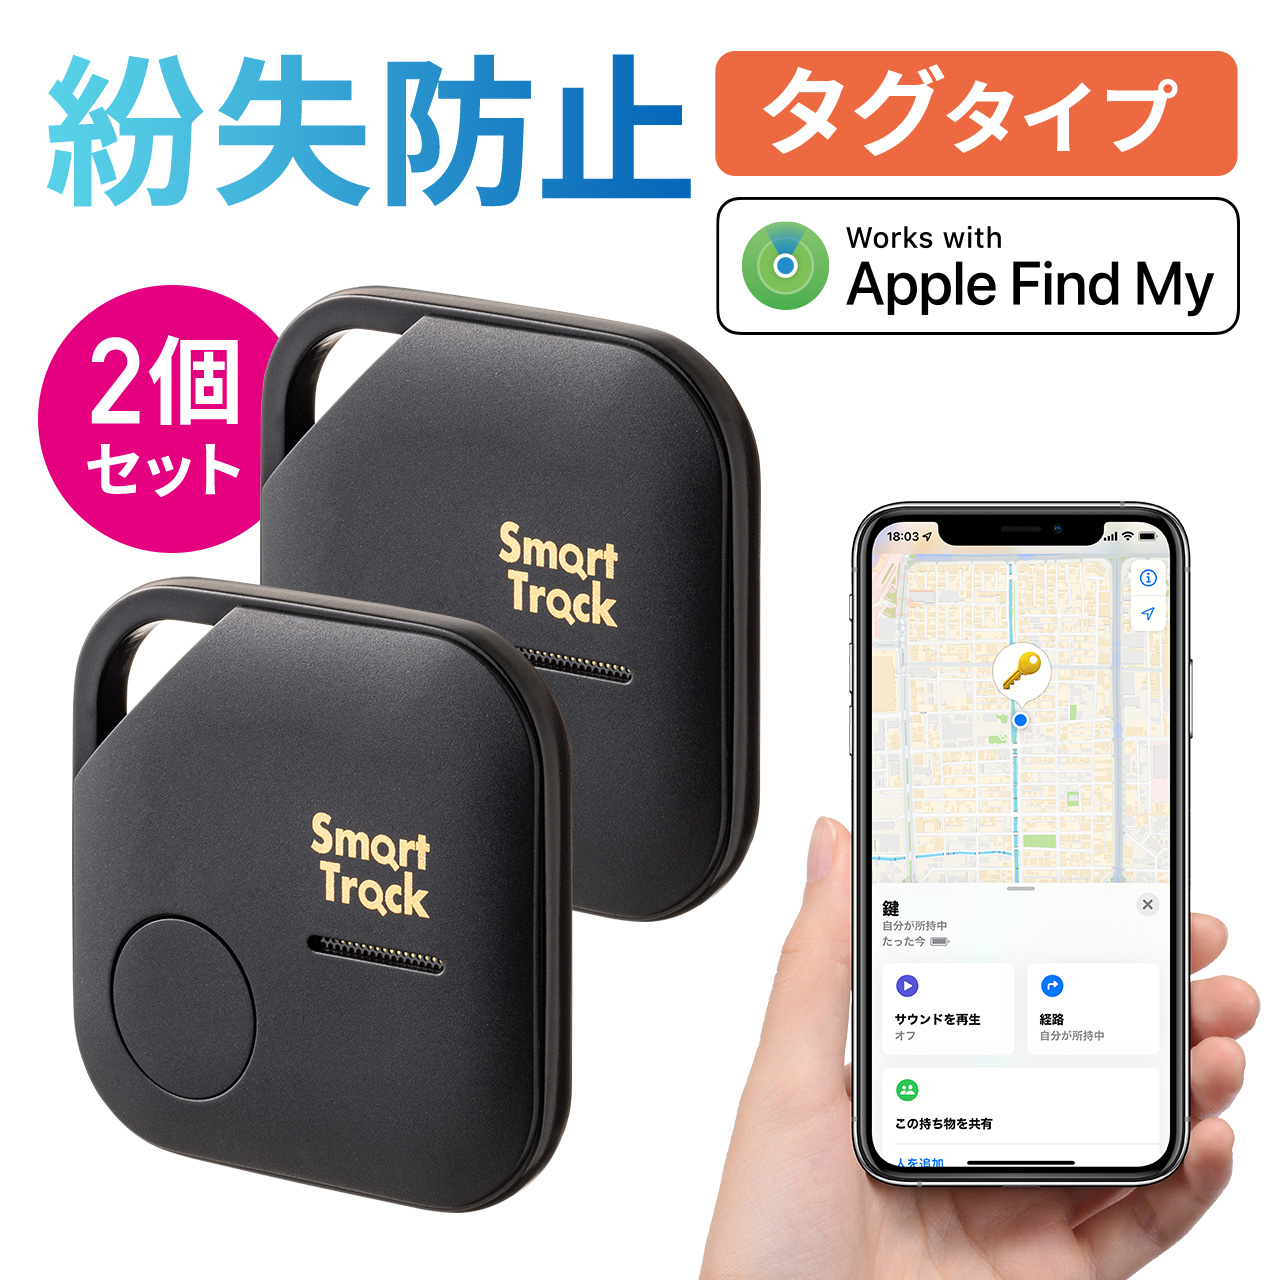 スマートタグ カード型 紛失防止タグ スマートトラッカー Apple Find My対応 キーファインダー GPS 探し物発見 忘れ物防止 iOS Android対応